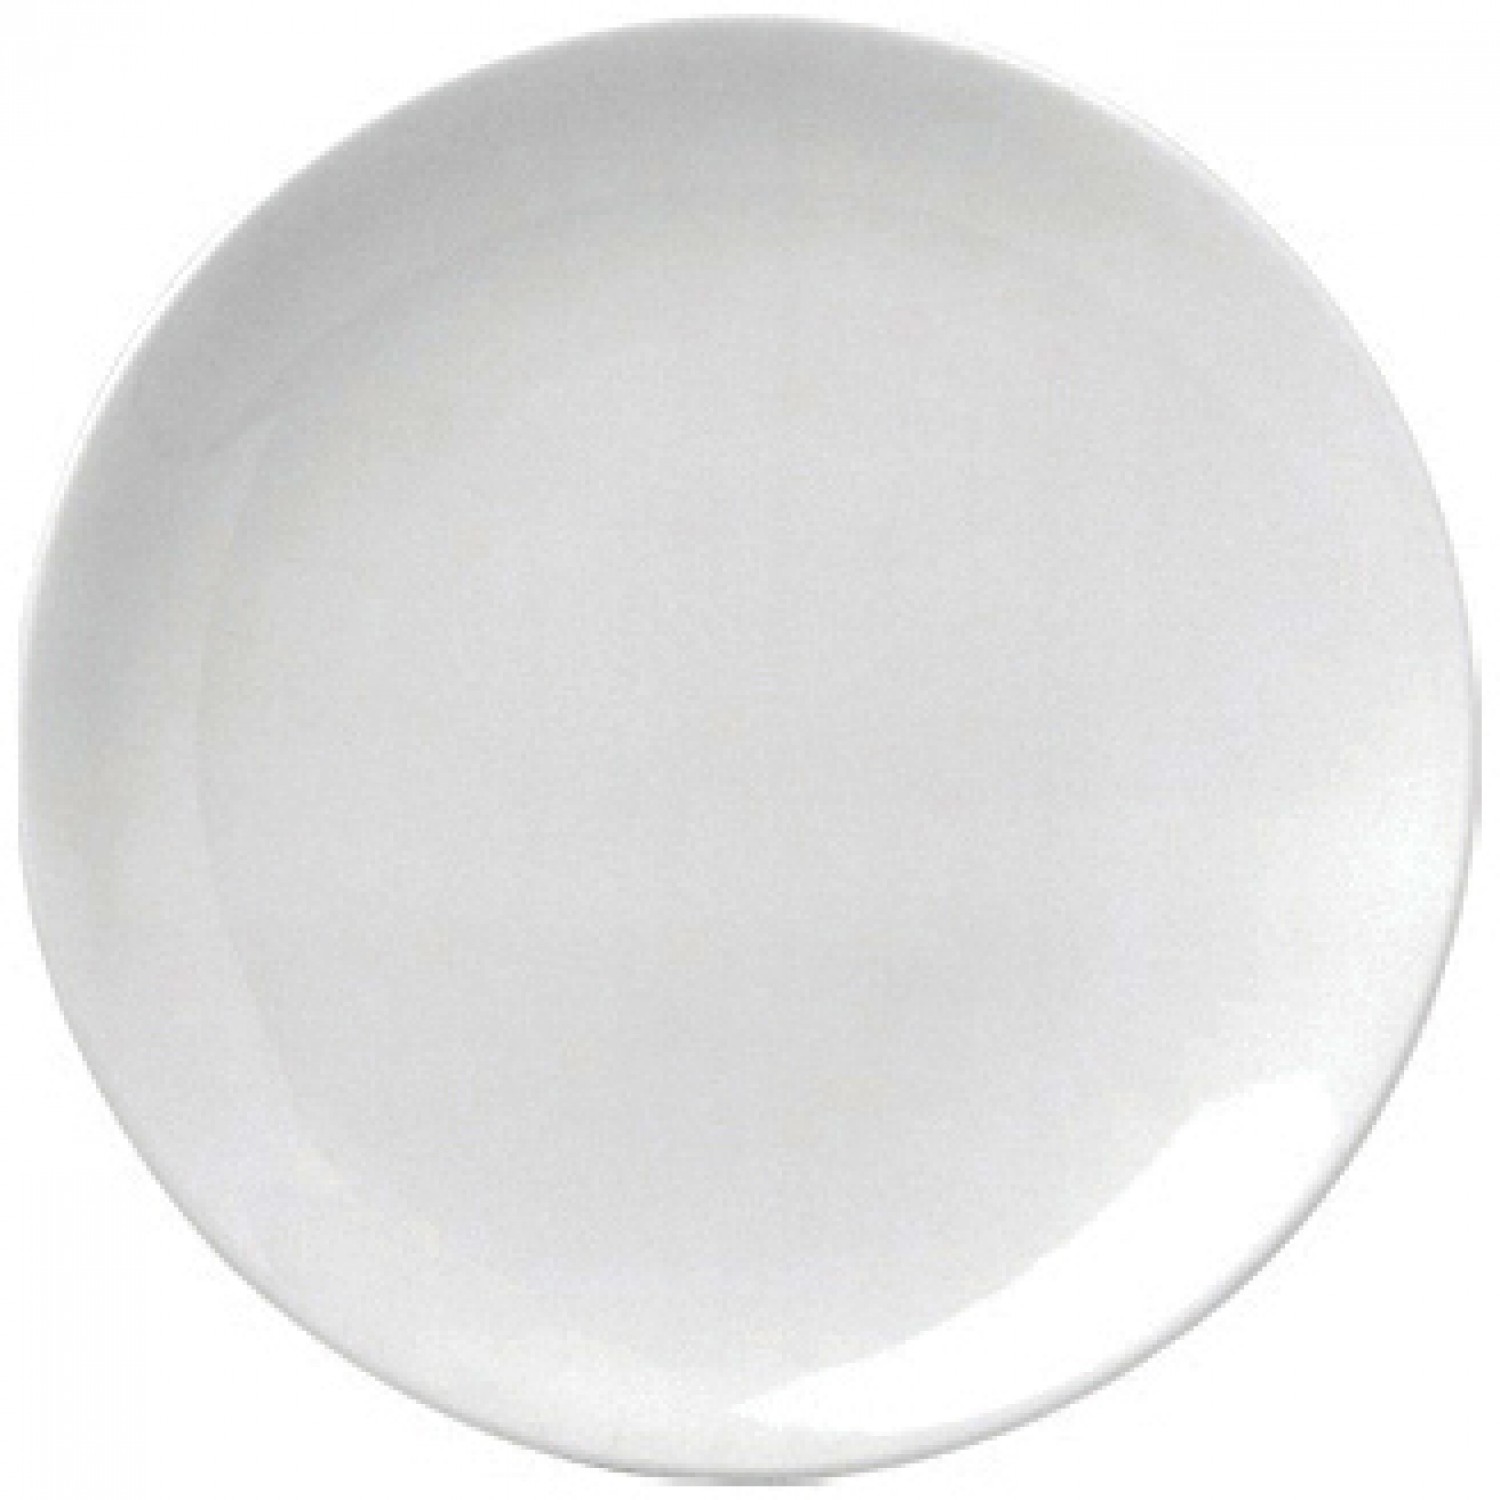 Πιάτο Ρηχό Στρογγυλό Coupe 15cm Άσπρο Πορσελάνης "ΕΟ" Gural 52.84001